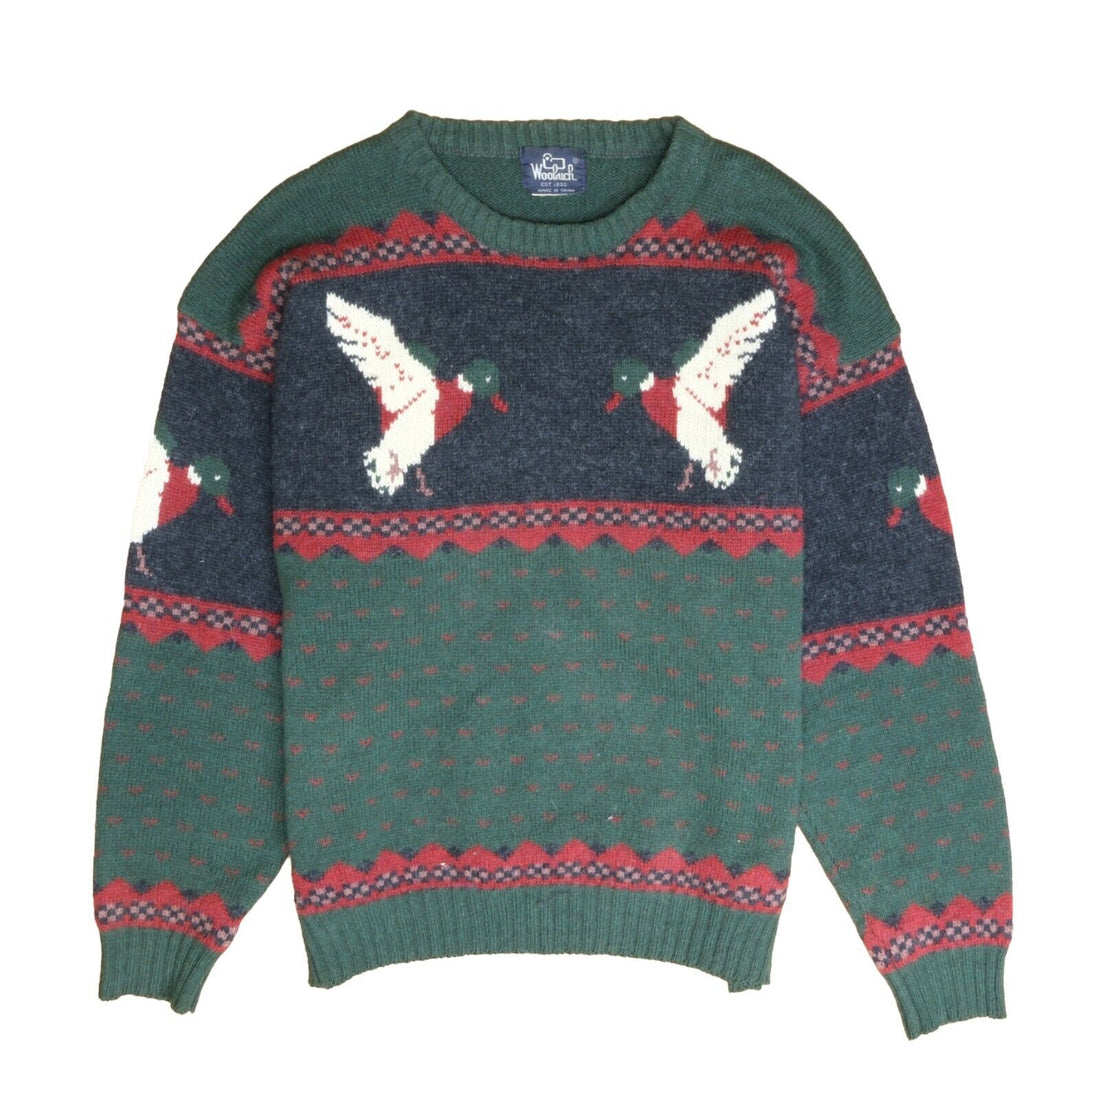 Vintage Woolrich Mallard Duck Wool Knit Sweater Size XL Green Red